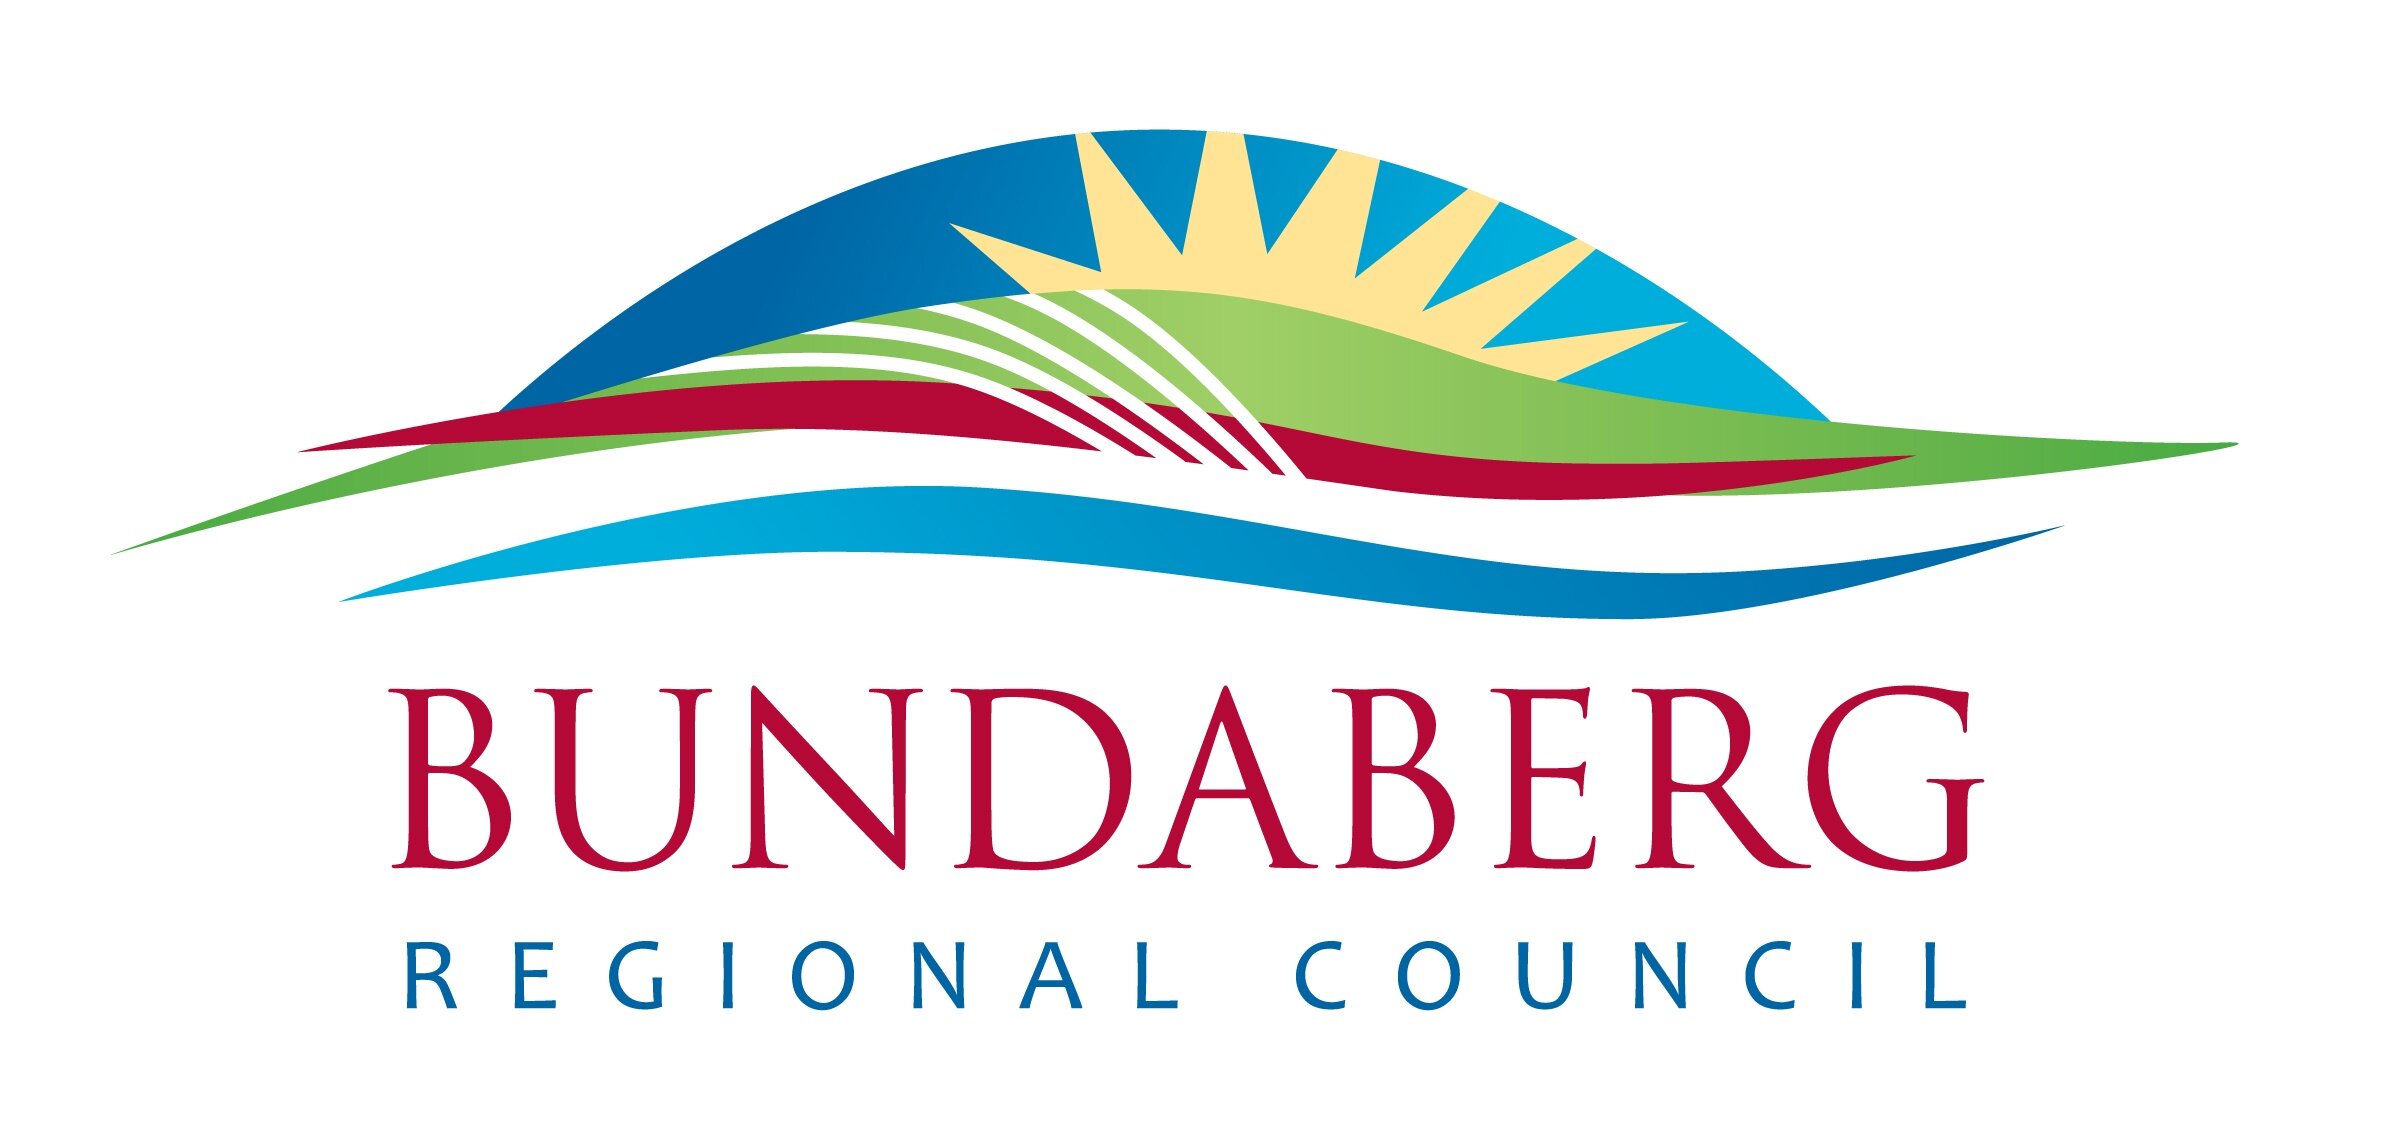 Bundaberg-Regional-Council-logo-rgb-highres.jpg